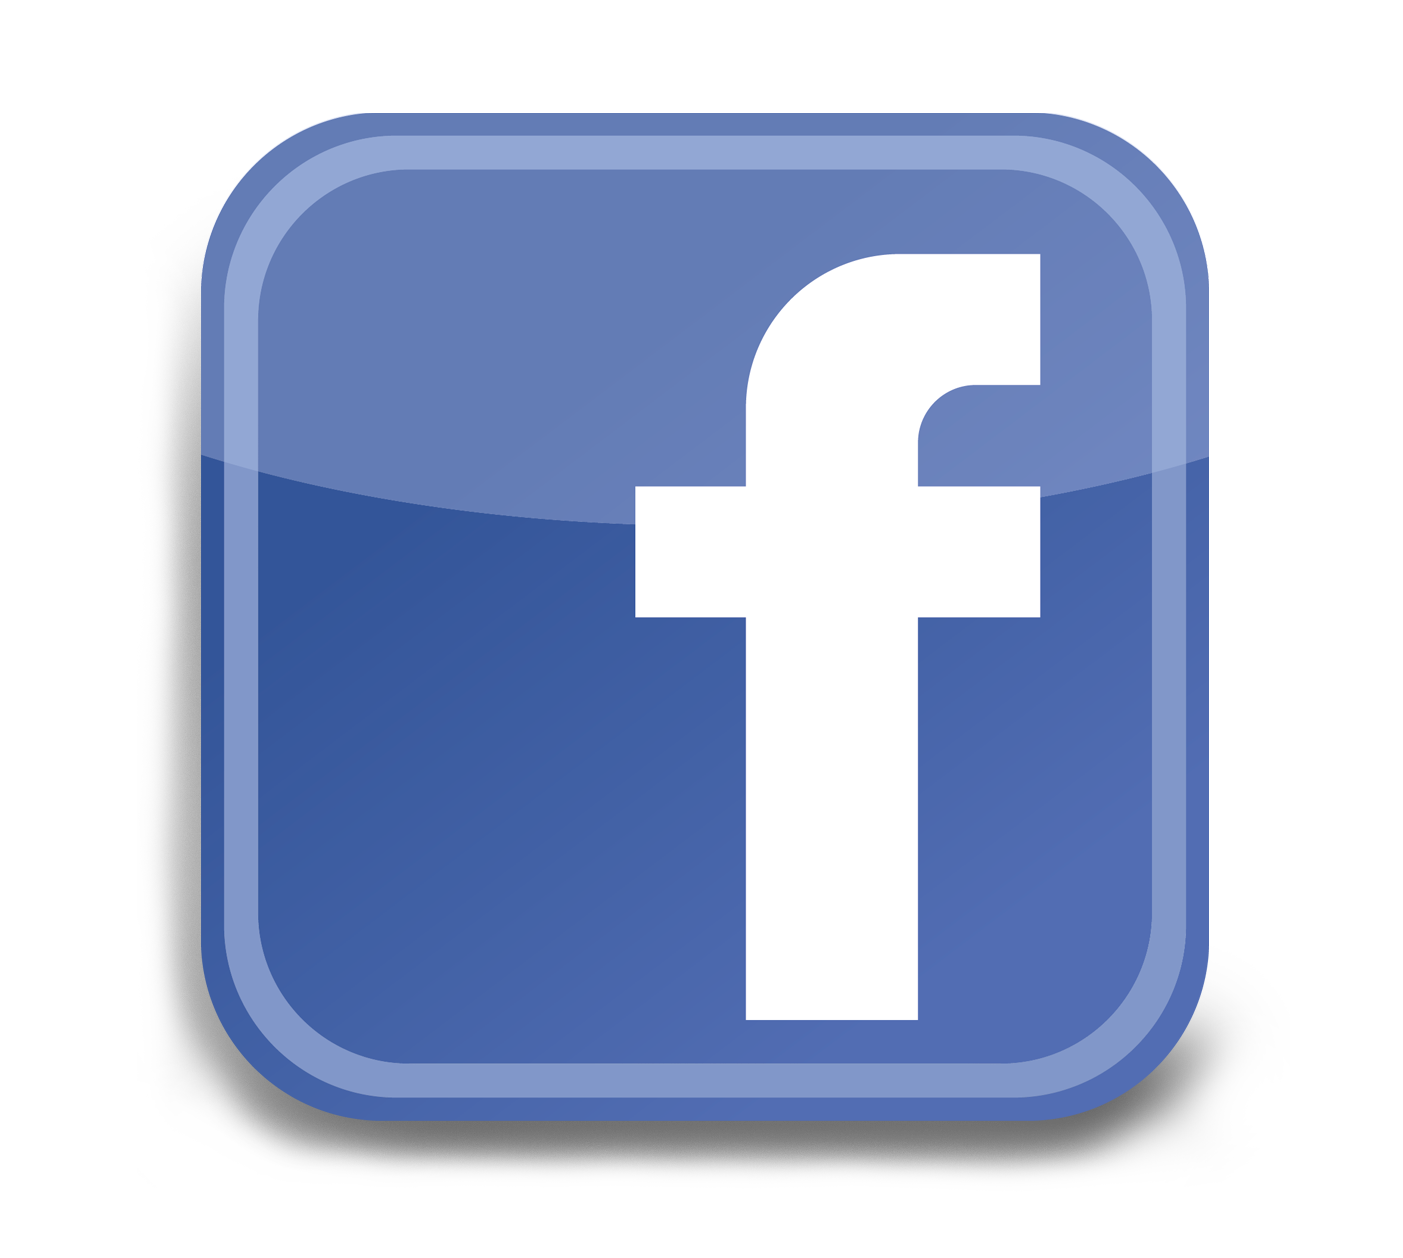 Attēlu rezultāti vaicājumam “facebook logo png”